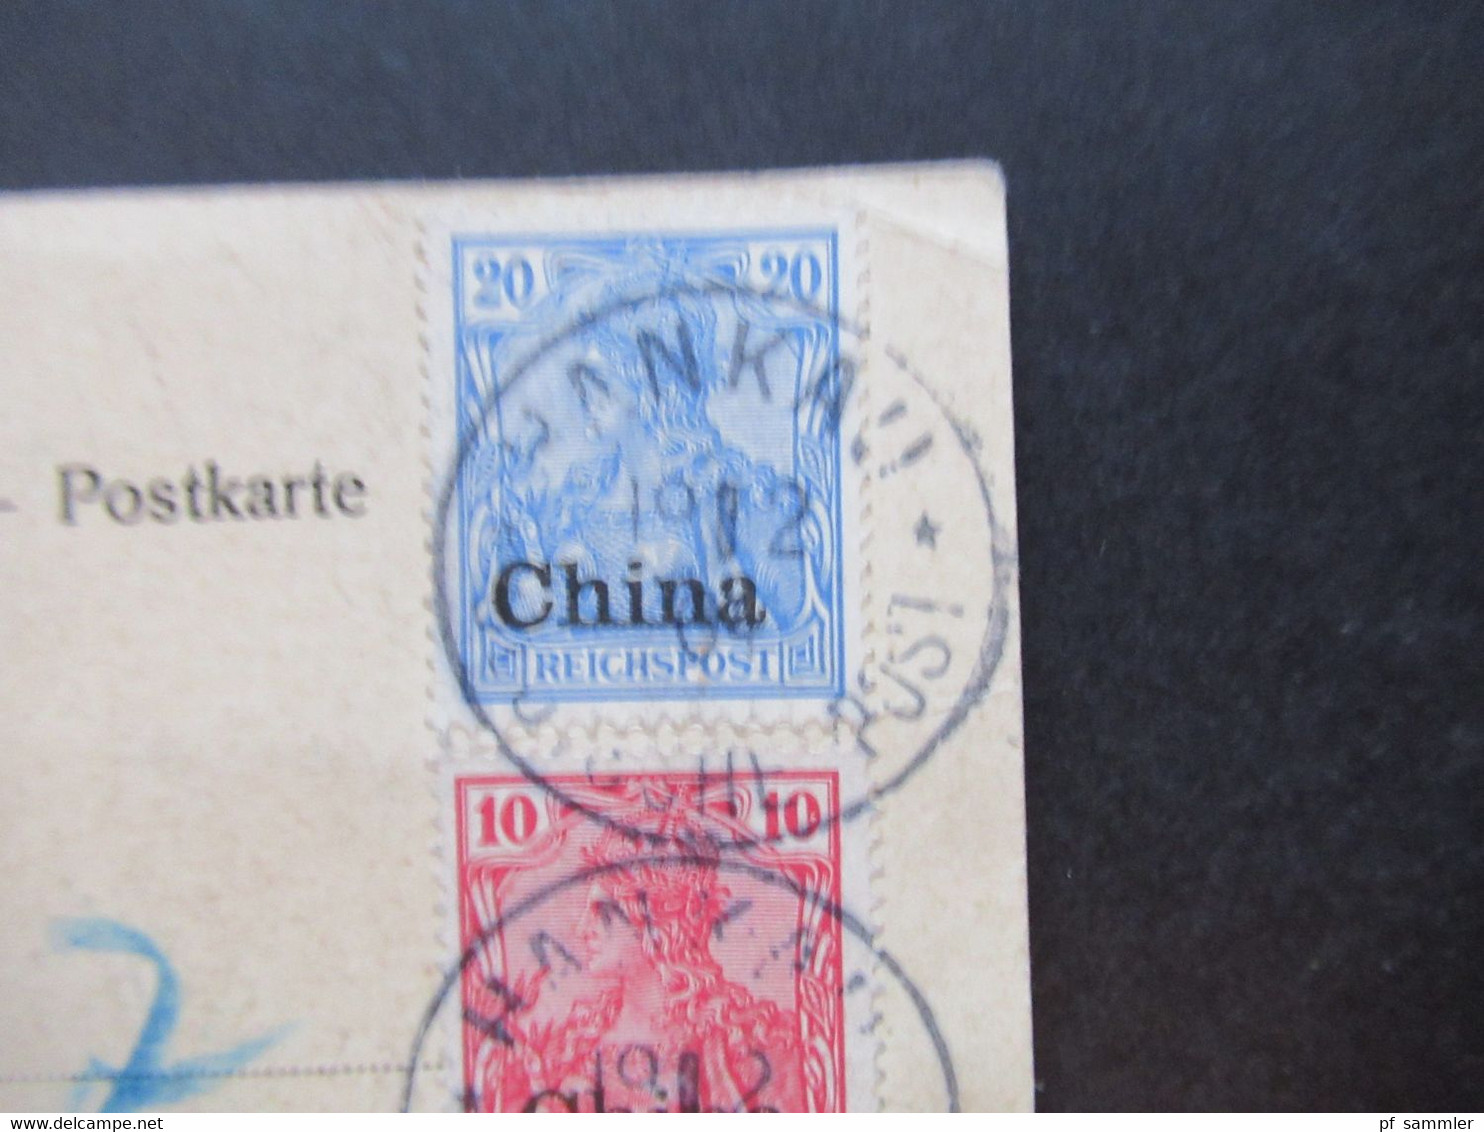 1904 Kolonie Deutsche Post in China AK Iltis Denkmal Shanghai Einschreiben Hankau (China) deutsche Post eingeschrieben